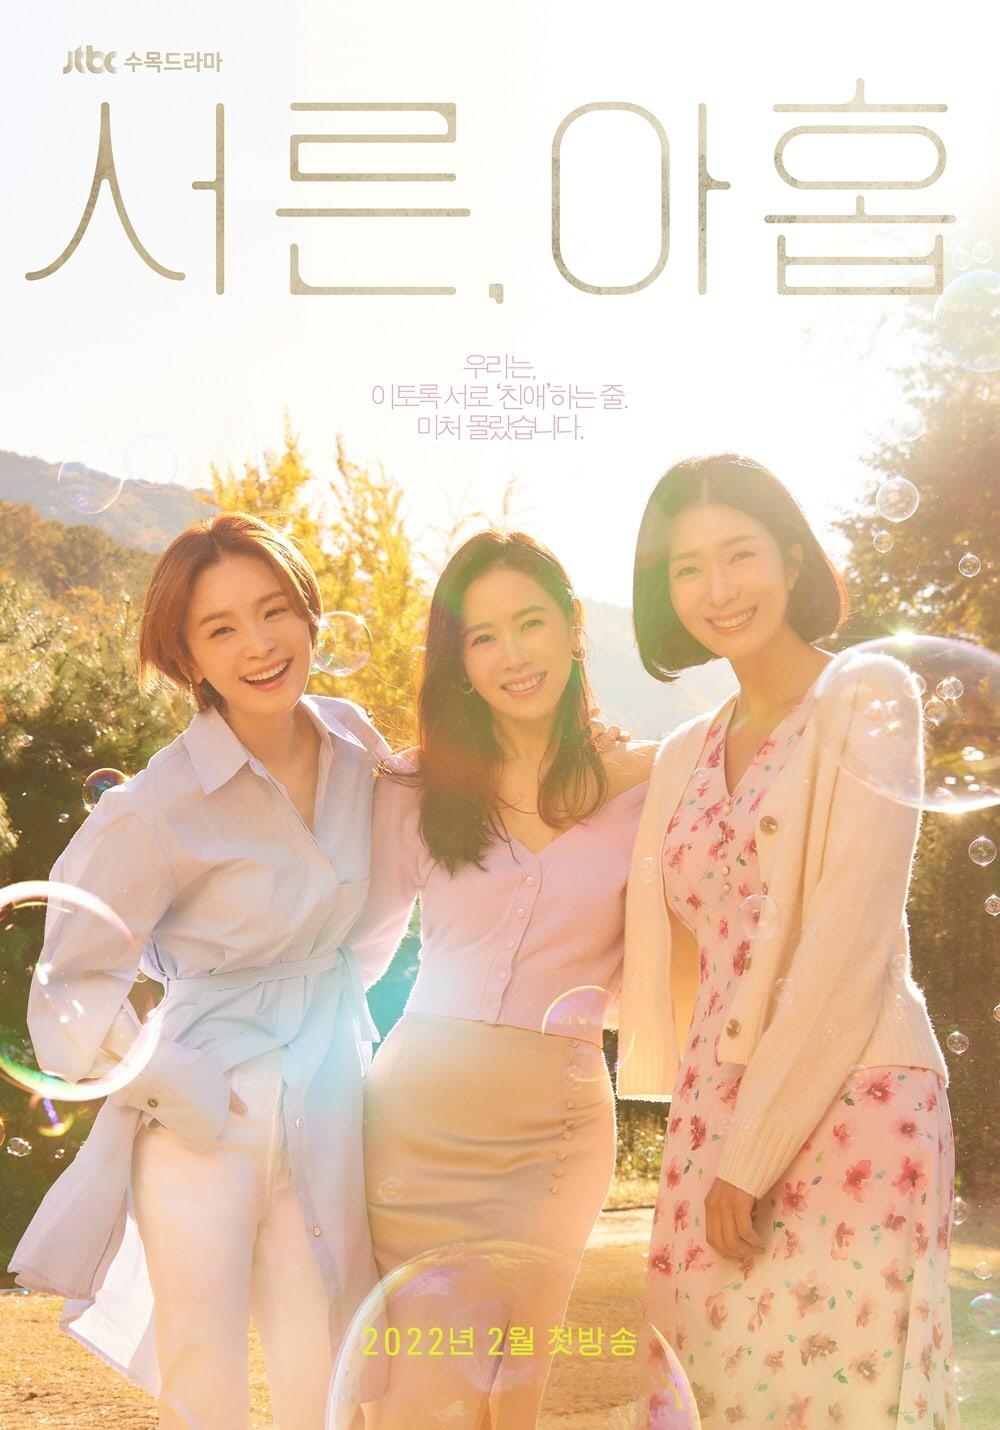 Son Ye Jin trải nghiệm thăng trầm cuộc sống trong phim mới ‘39’